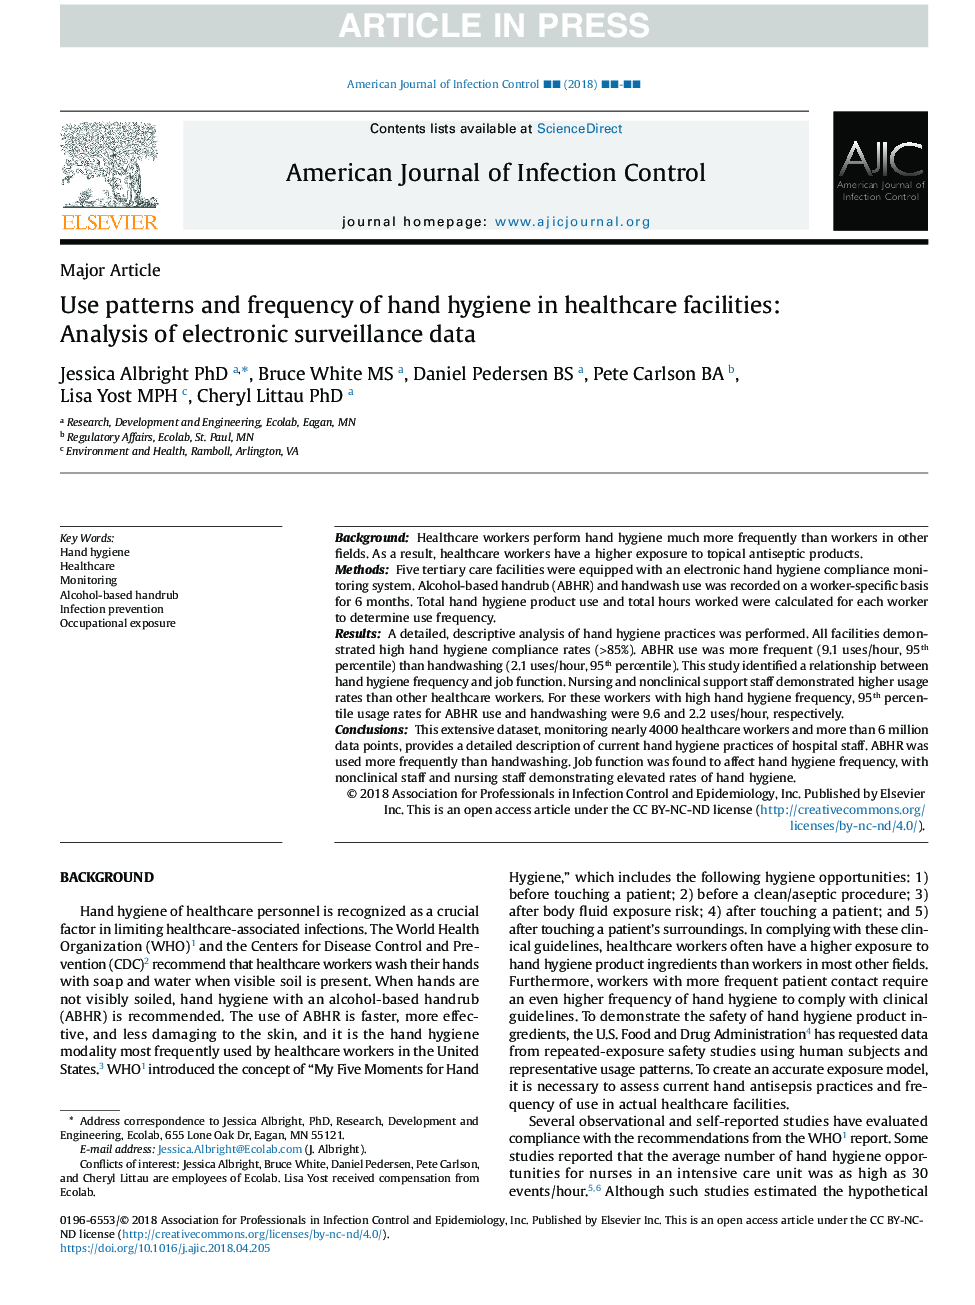 استفاده از الگوهای و فرکانس بهداشت دست در مراکز بهداشتی و درمانی: تجزیه و تحلیل داده های نظارت الکترونیکی